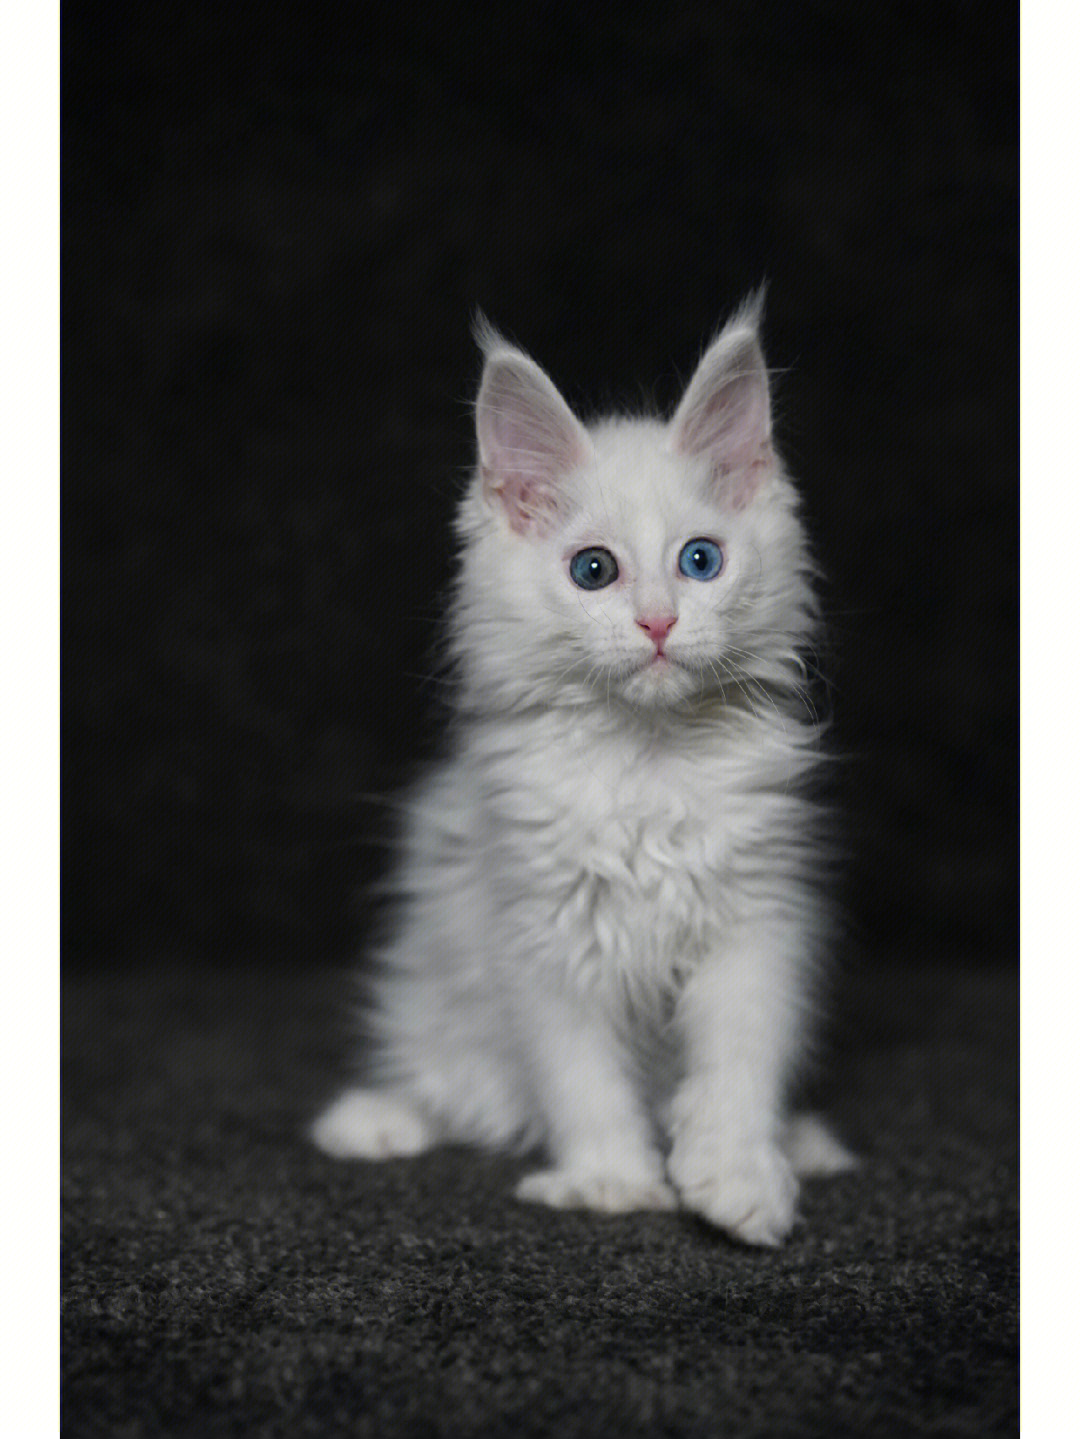 缅因猫幼猫颜色纯白异瞳性格好价格小贵